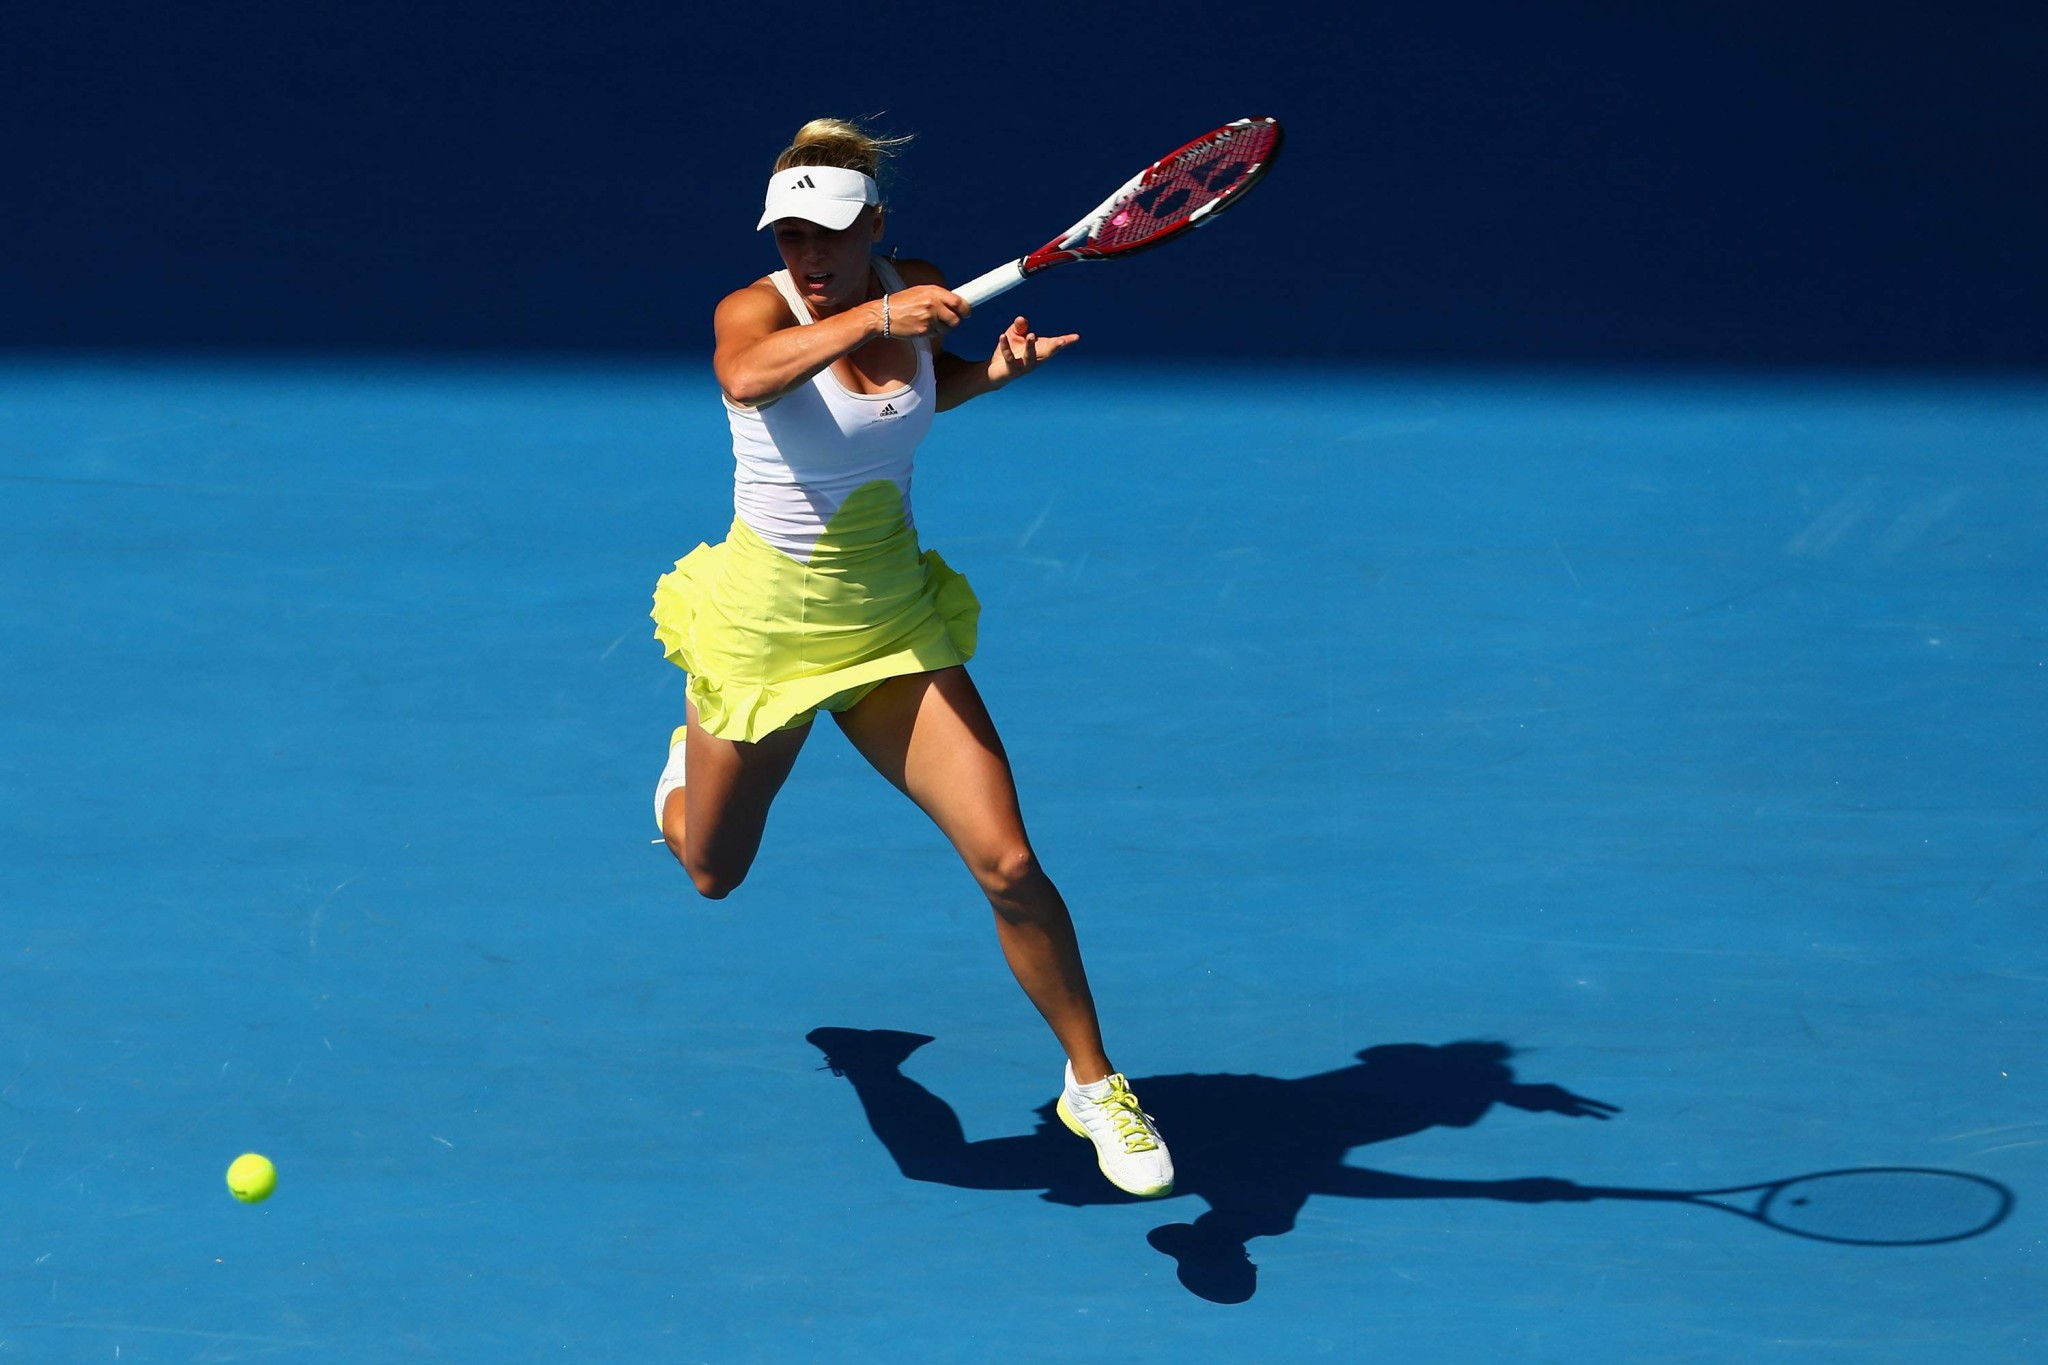 Caroline wozniacki mostrando sudato scollatura camelote al 2013 australiano aperto
 #75243047